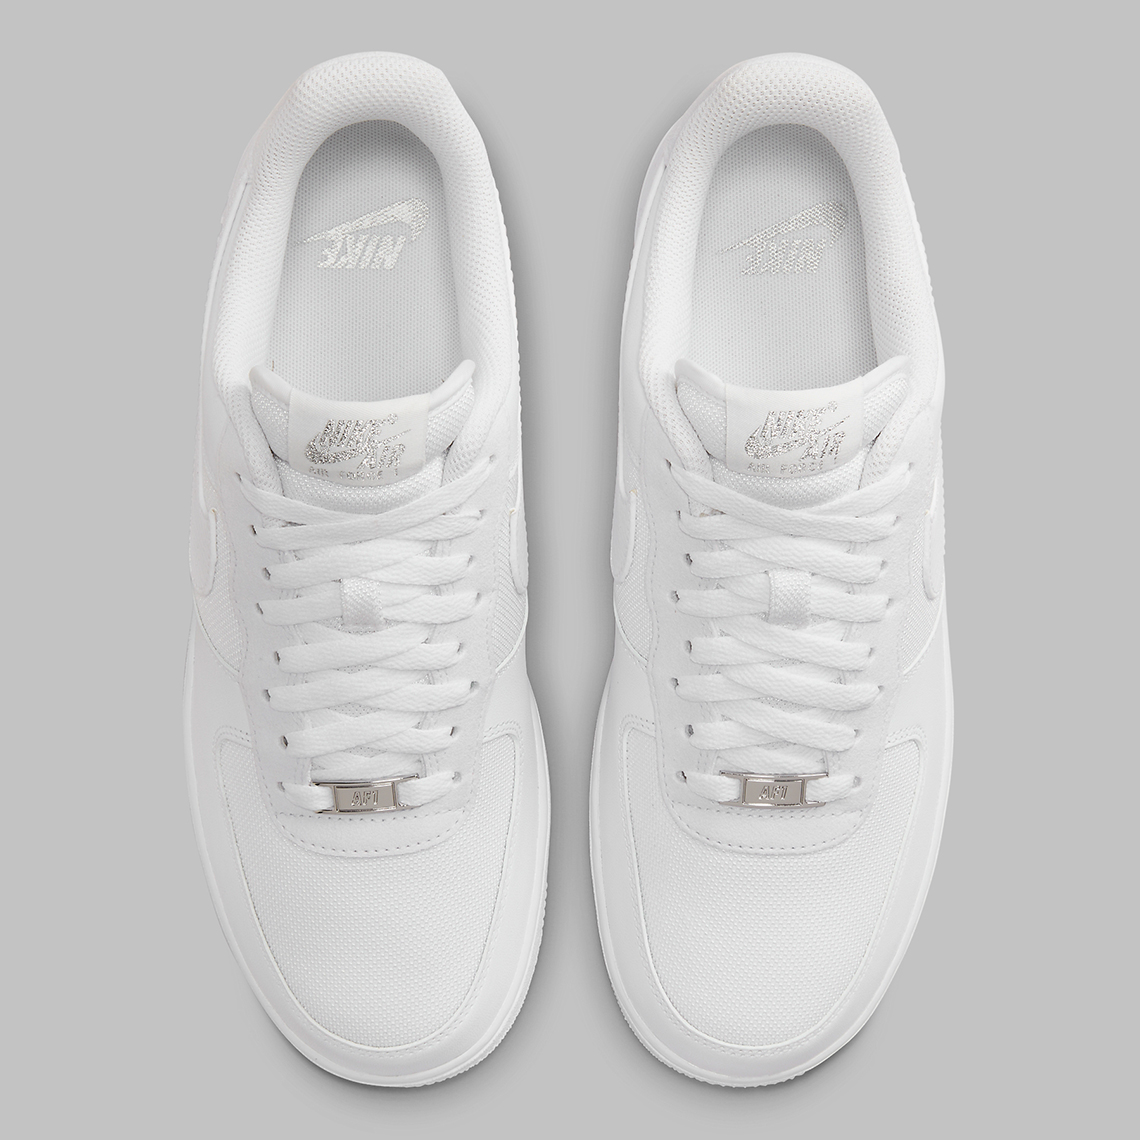 Nike Air Blazer Low Sneakers White Silver Fj4004 100 2